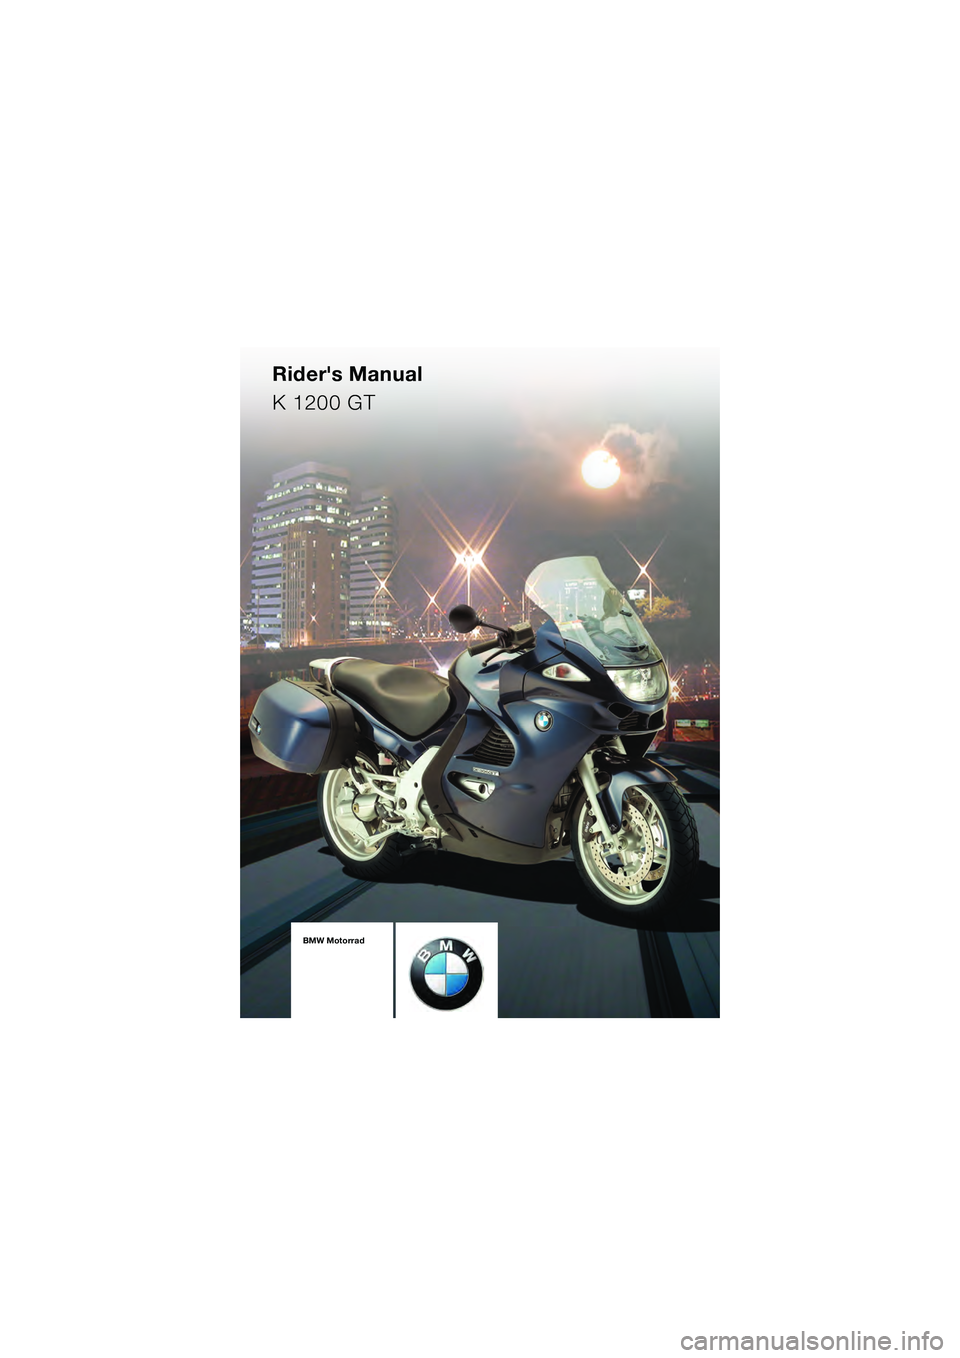 BMW MOTORRAD K 1200 GT 2004  Riders Manual (in English) BMW Motorrad
Riders Manual
K 1200 GT
10k41bkg3.book  Seite 1  Mittwoch,  26. Mai 2004  9:08 21 